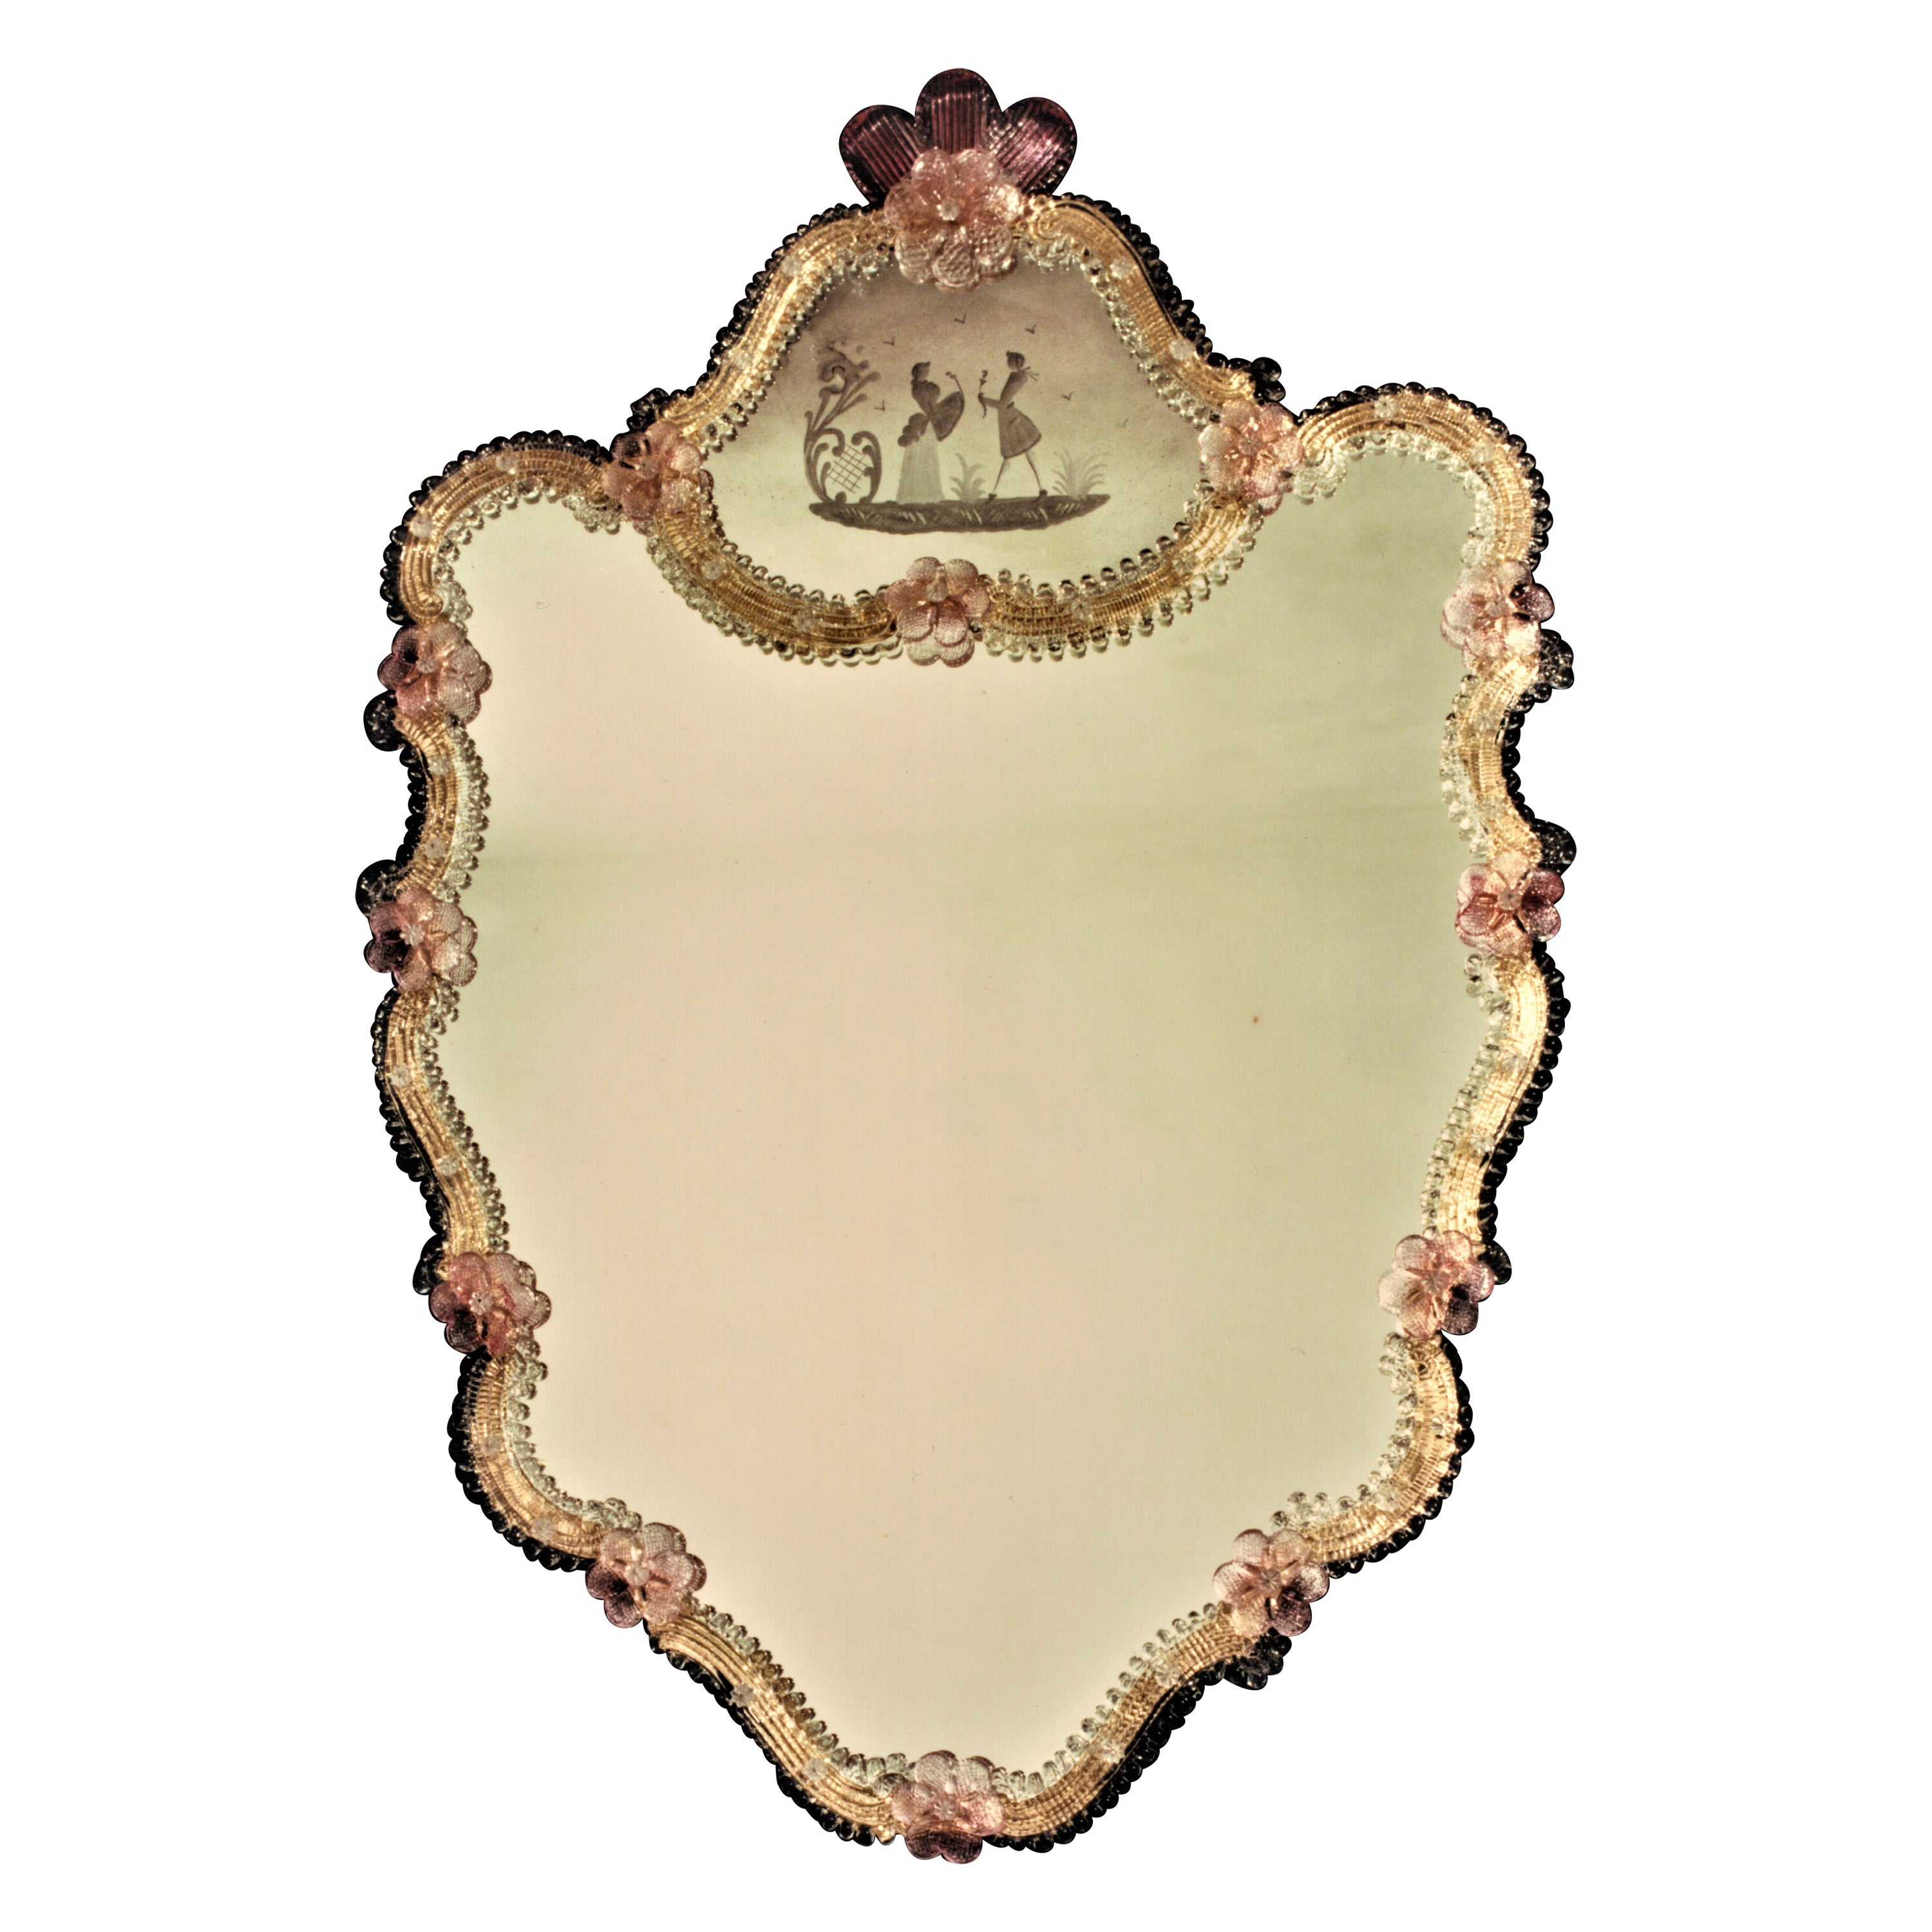 Spiegel aus Muranoglas im venezianischen Stil, hergestellt von Fratelli Tosi,
der Spiegel besteht aus einem Kristallrahmen auf einem goldenen Hintergrund aus Muranoglas, der mit rubinroten Blumen und Blättern verziert ist. Der obere Teil des